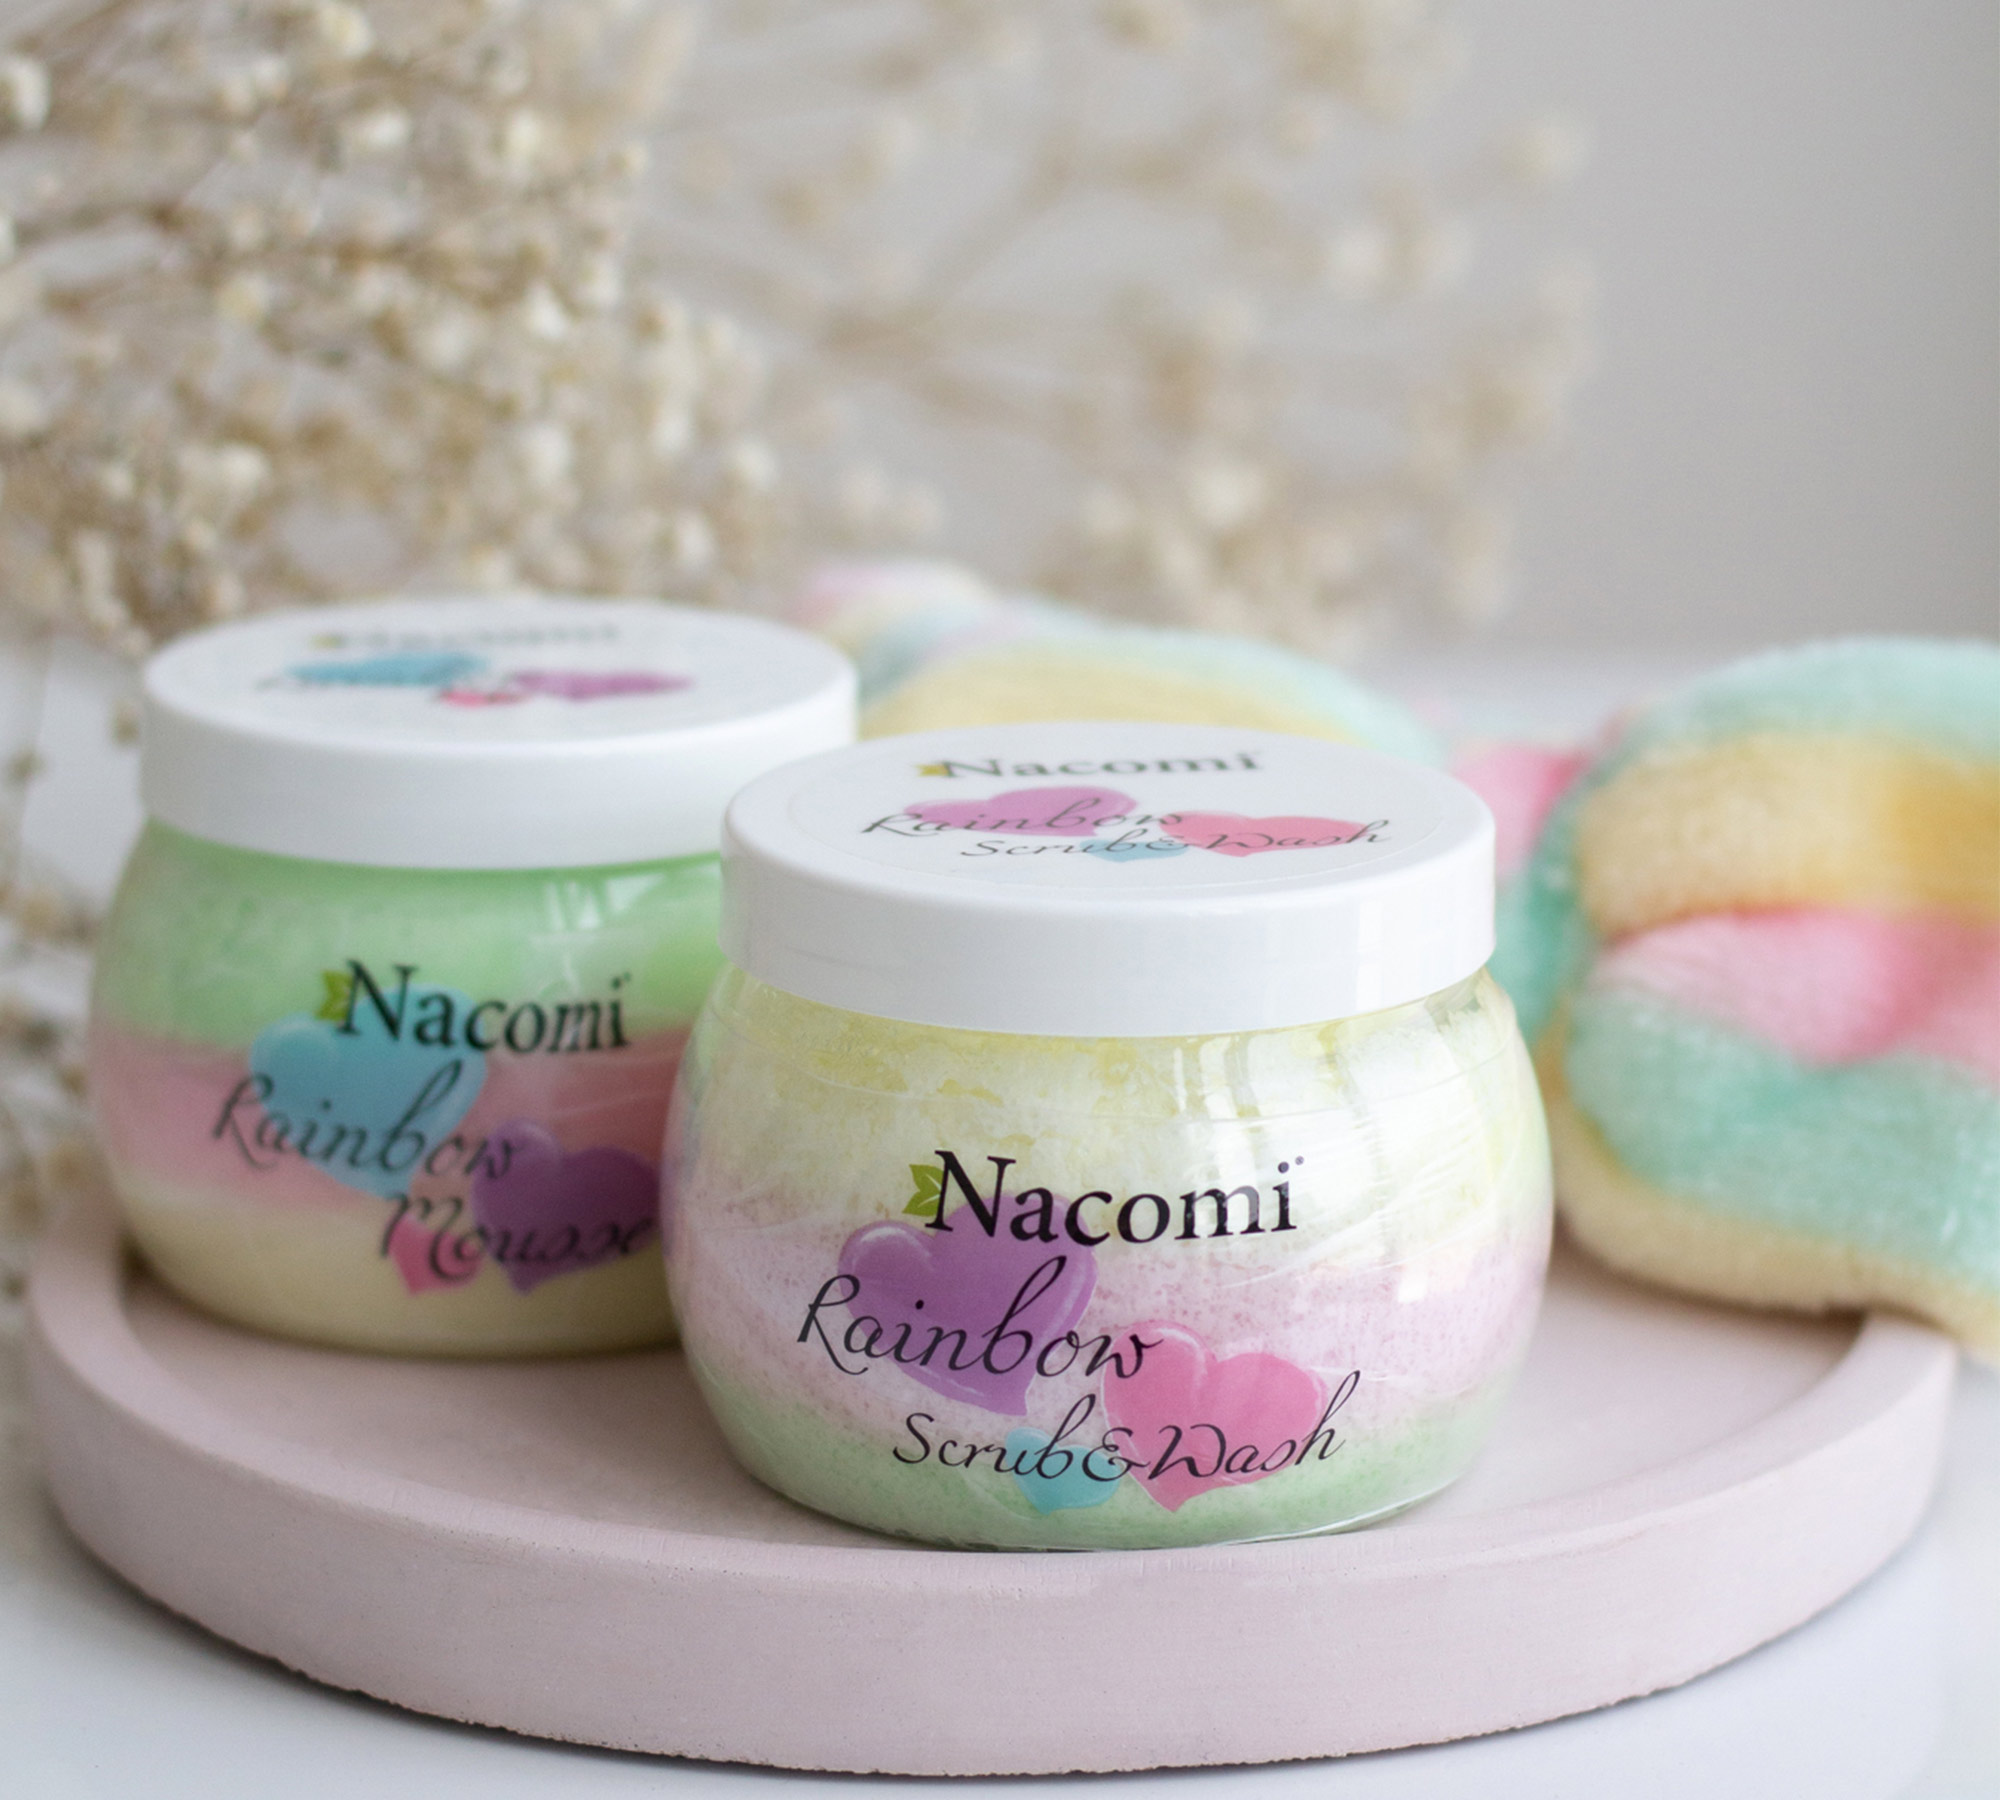 Nacomi-rainbow-scrub-wash